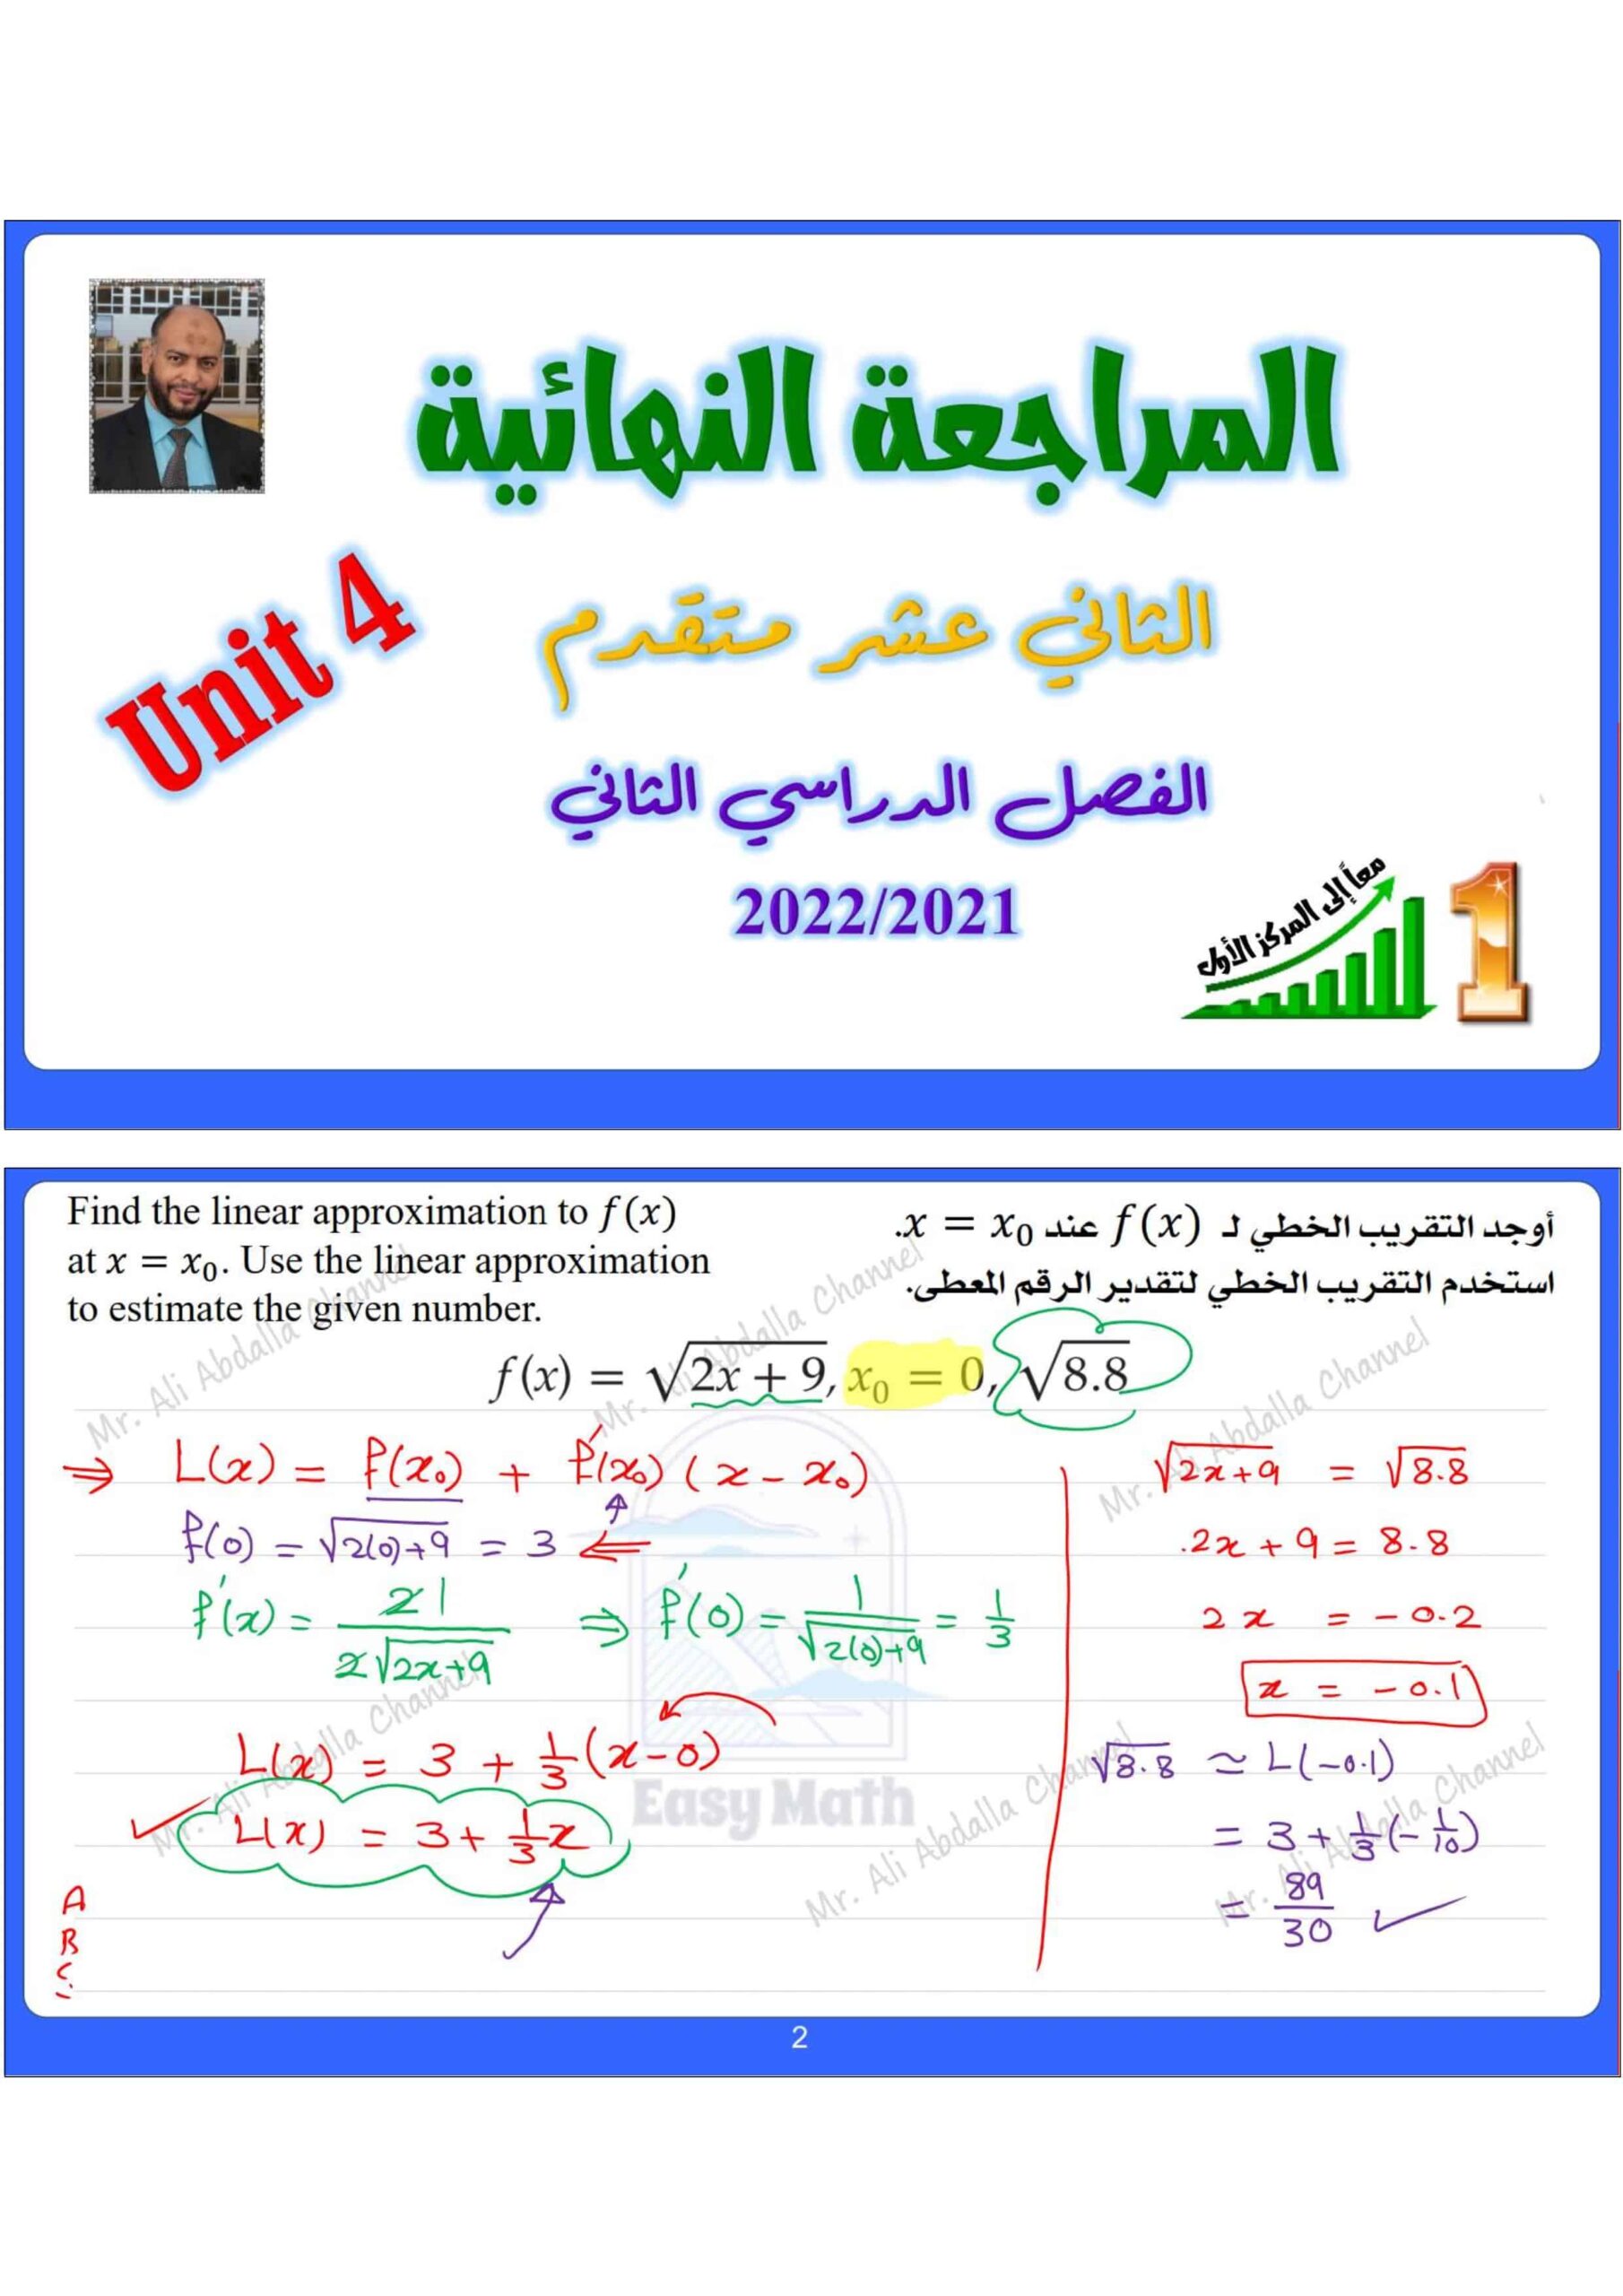 حل أوراق عمل الوحدة الرابعة مراجعة نهائية الرياضيات المتكاملة الصف الثاني عشر متقدم